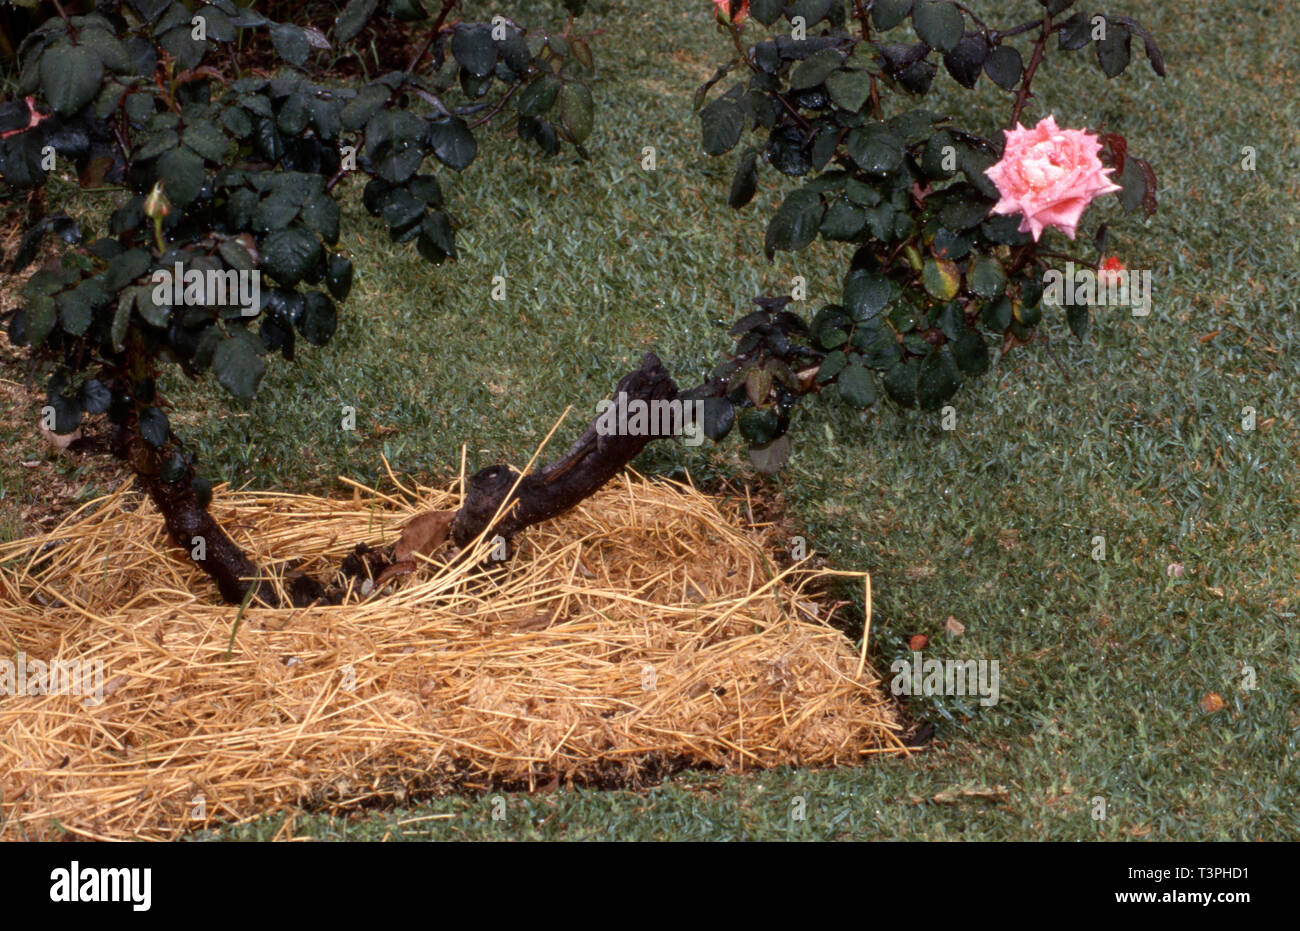 Paillis de paille utilisé autour de la base d'un buisson rose rose (Rosa). Compost paille aura assez rapidement dans la plupart des paramètres de jardin. Banque D'Images